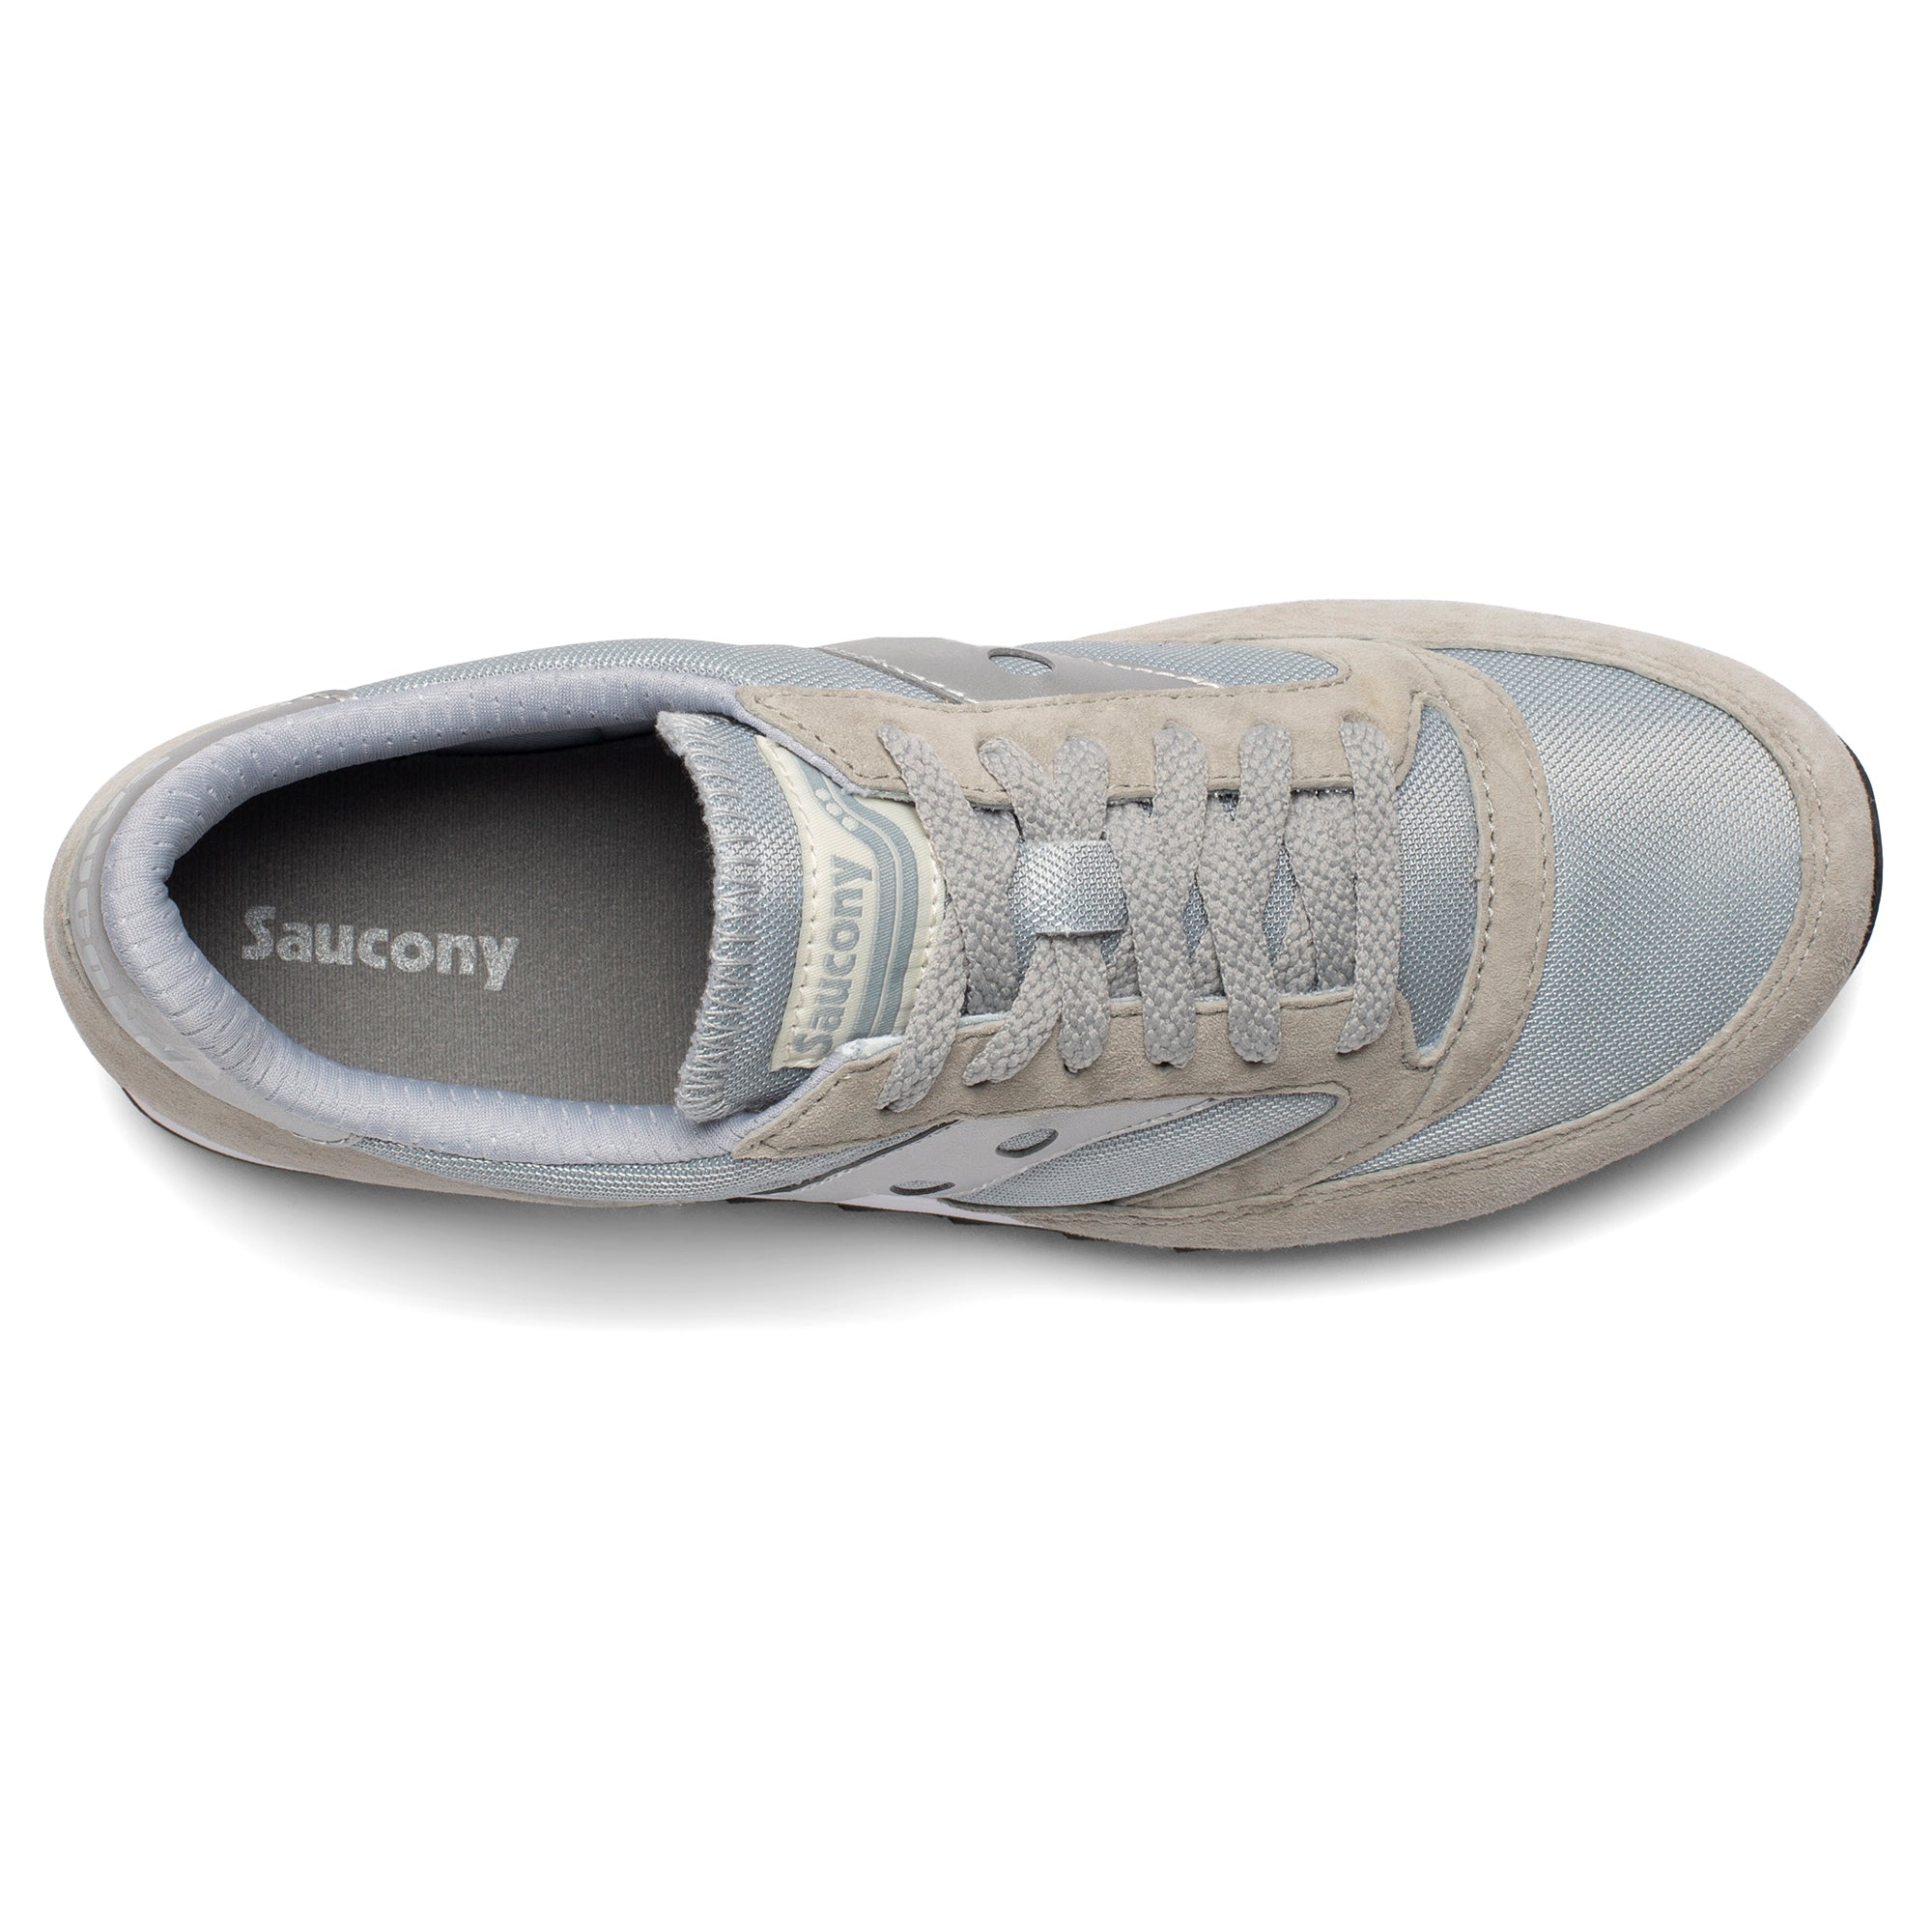 Saucony Jazz 81 Trainers - Grey/Silver